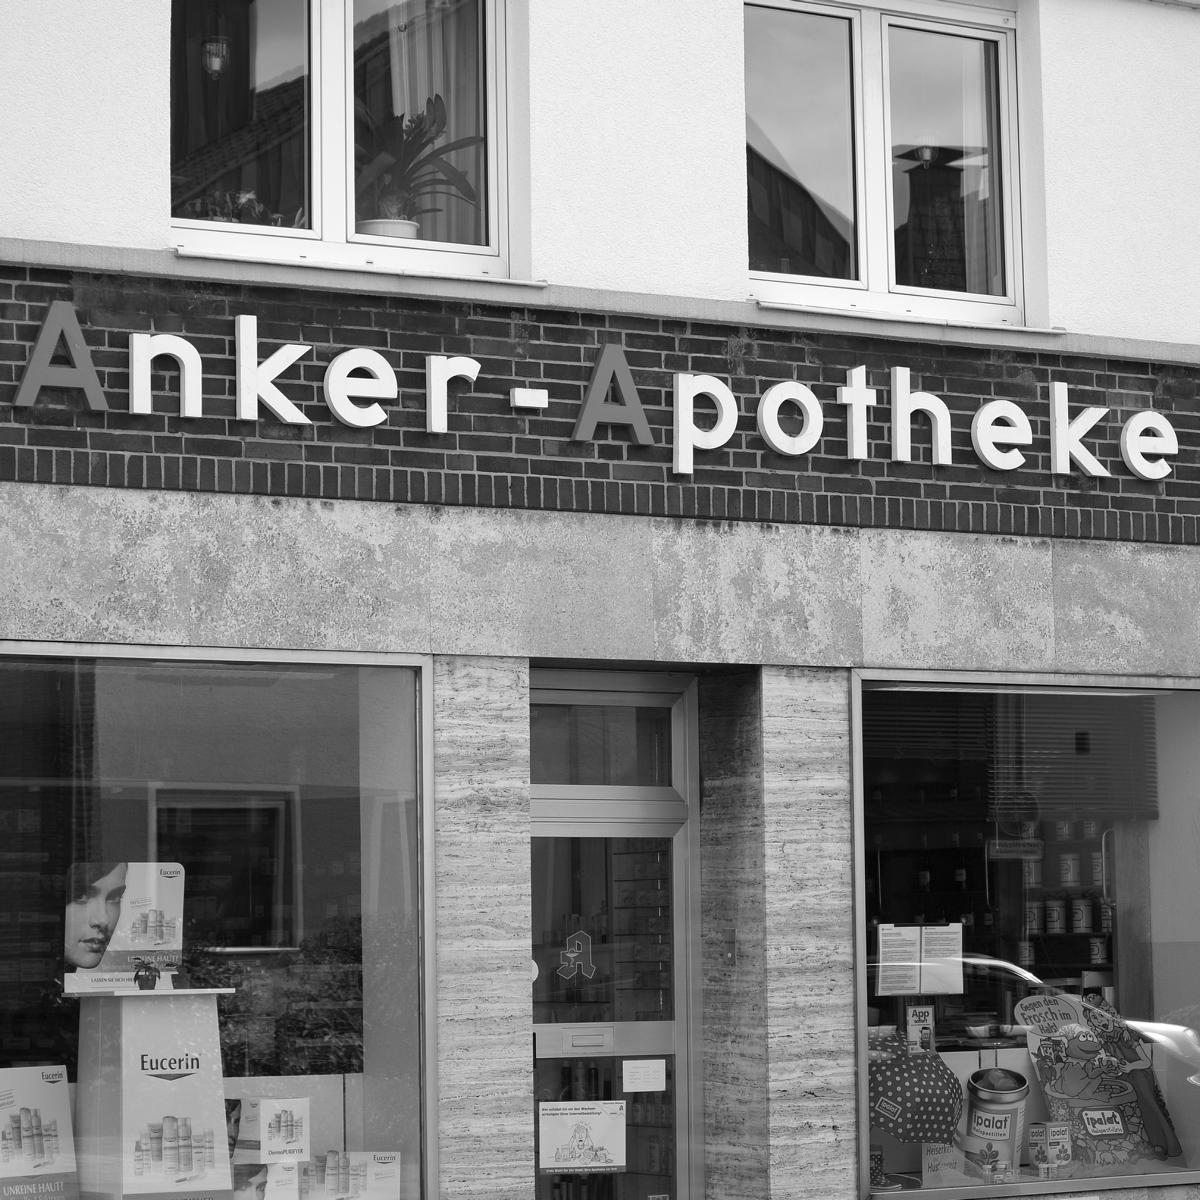 Anker Apotheke